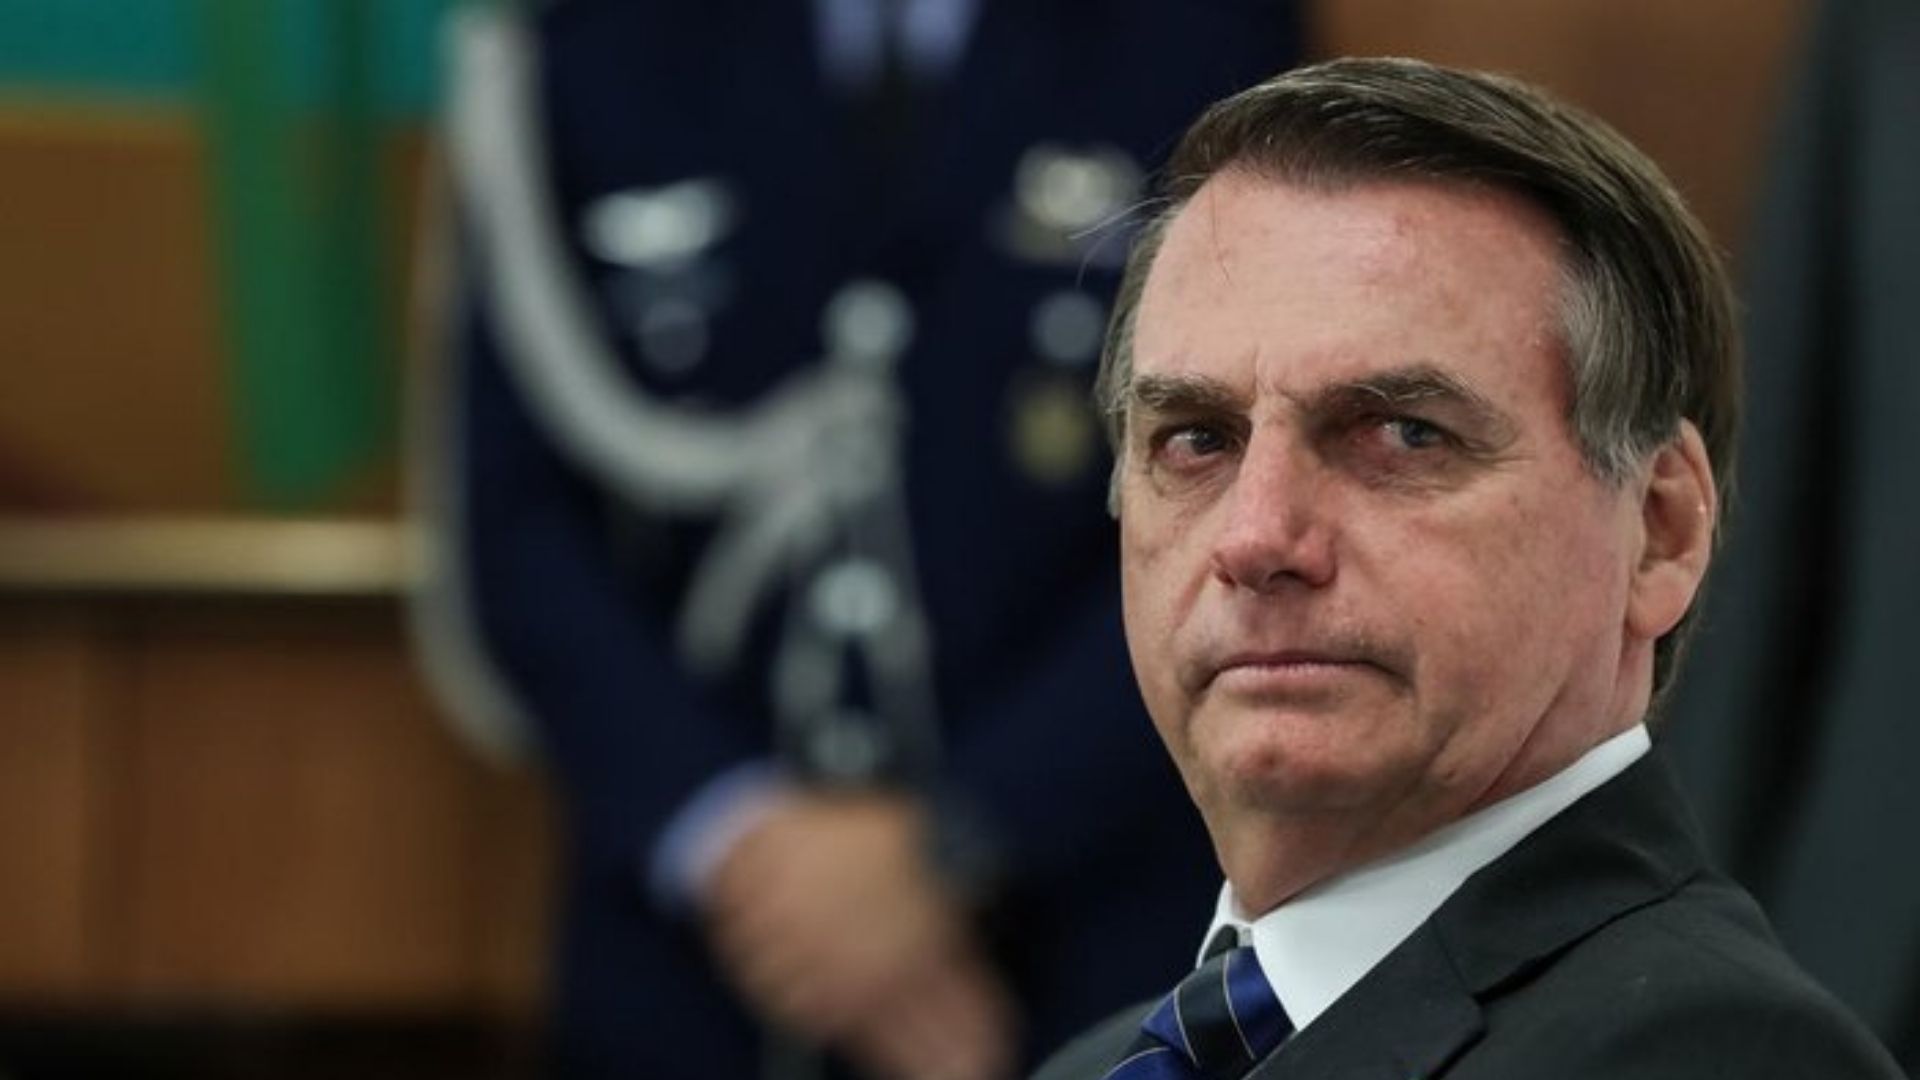 Novo advogado de Bolsonaro foi escolhido a dedo, apontam interlocutores do presidente